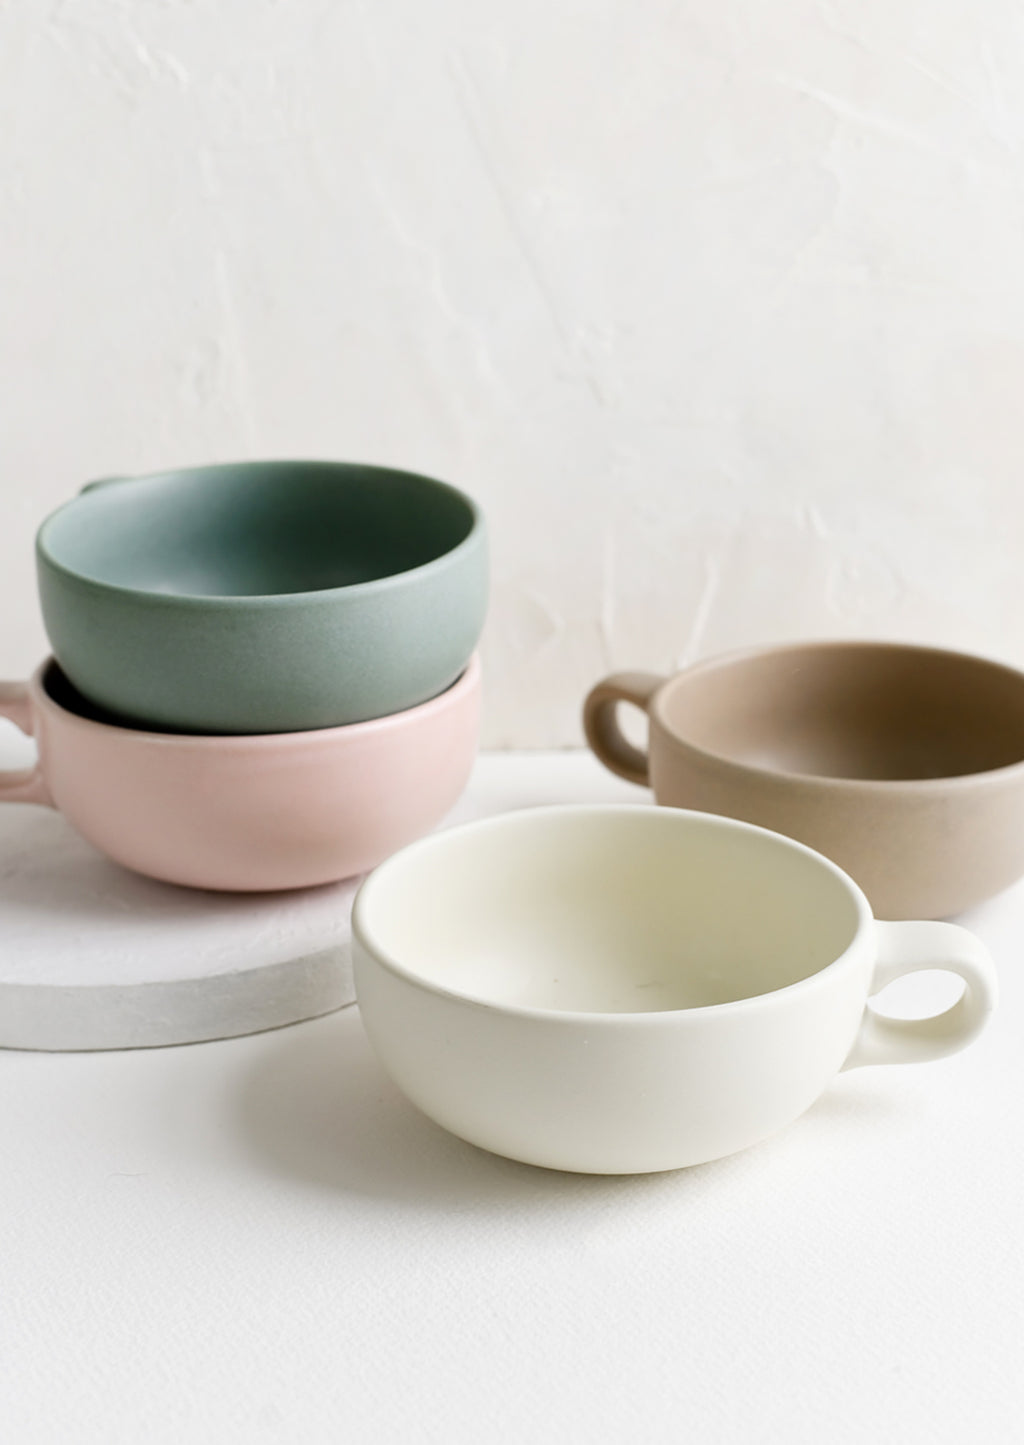 3: Assorted colors of ceramic mug bowls.